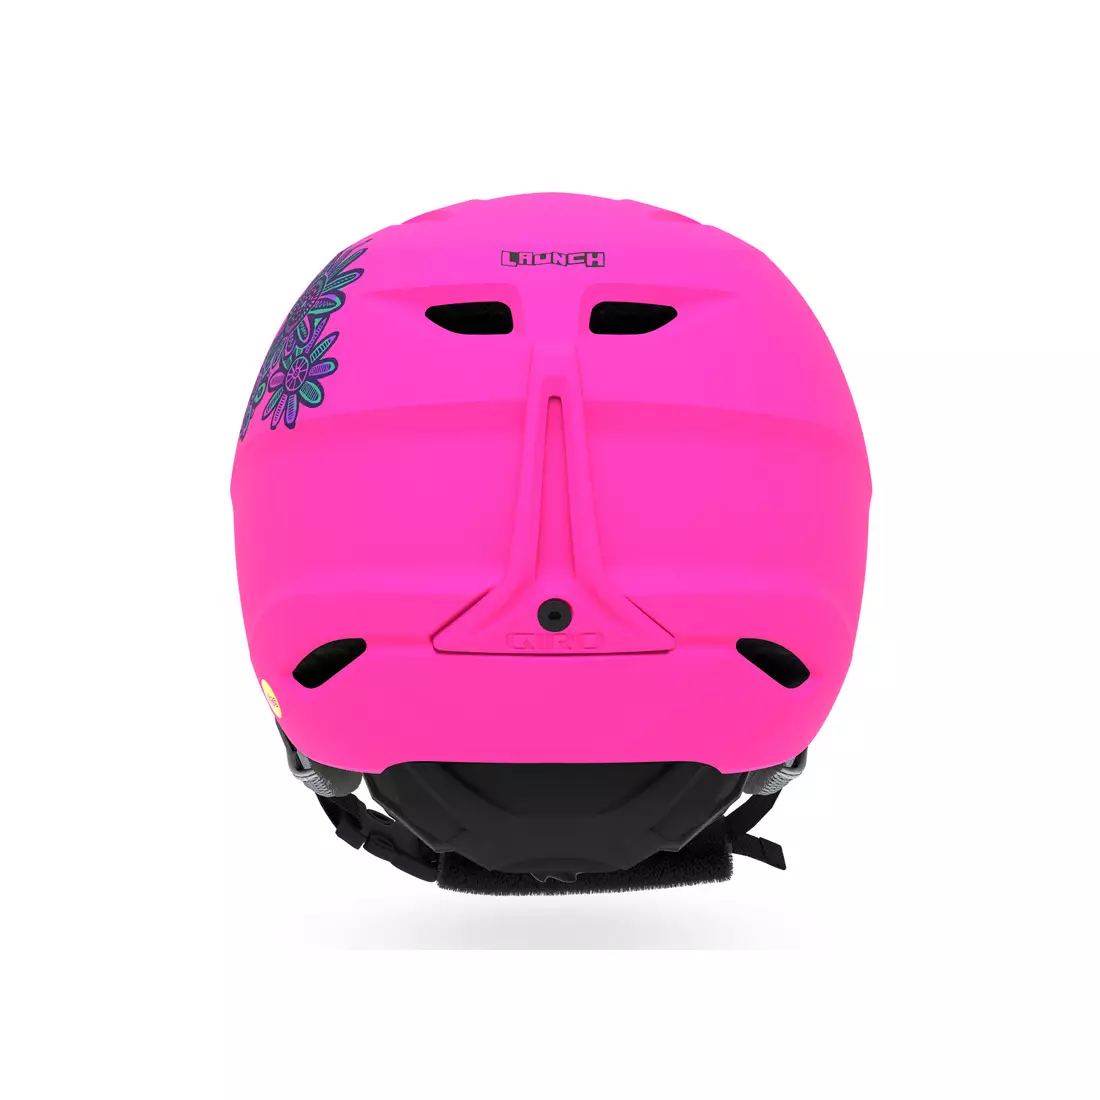 Zimní lyžařská / snowboardová přilba GIRO LAUNCH matte bright pink